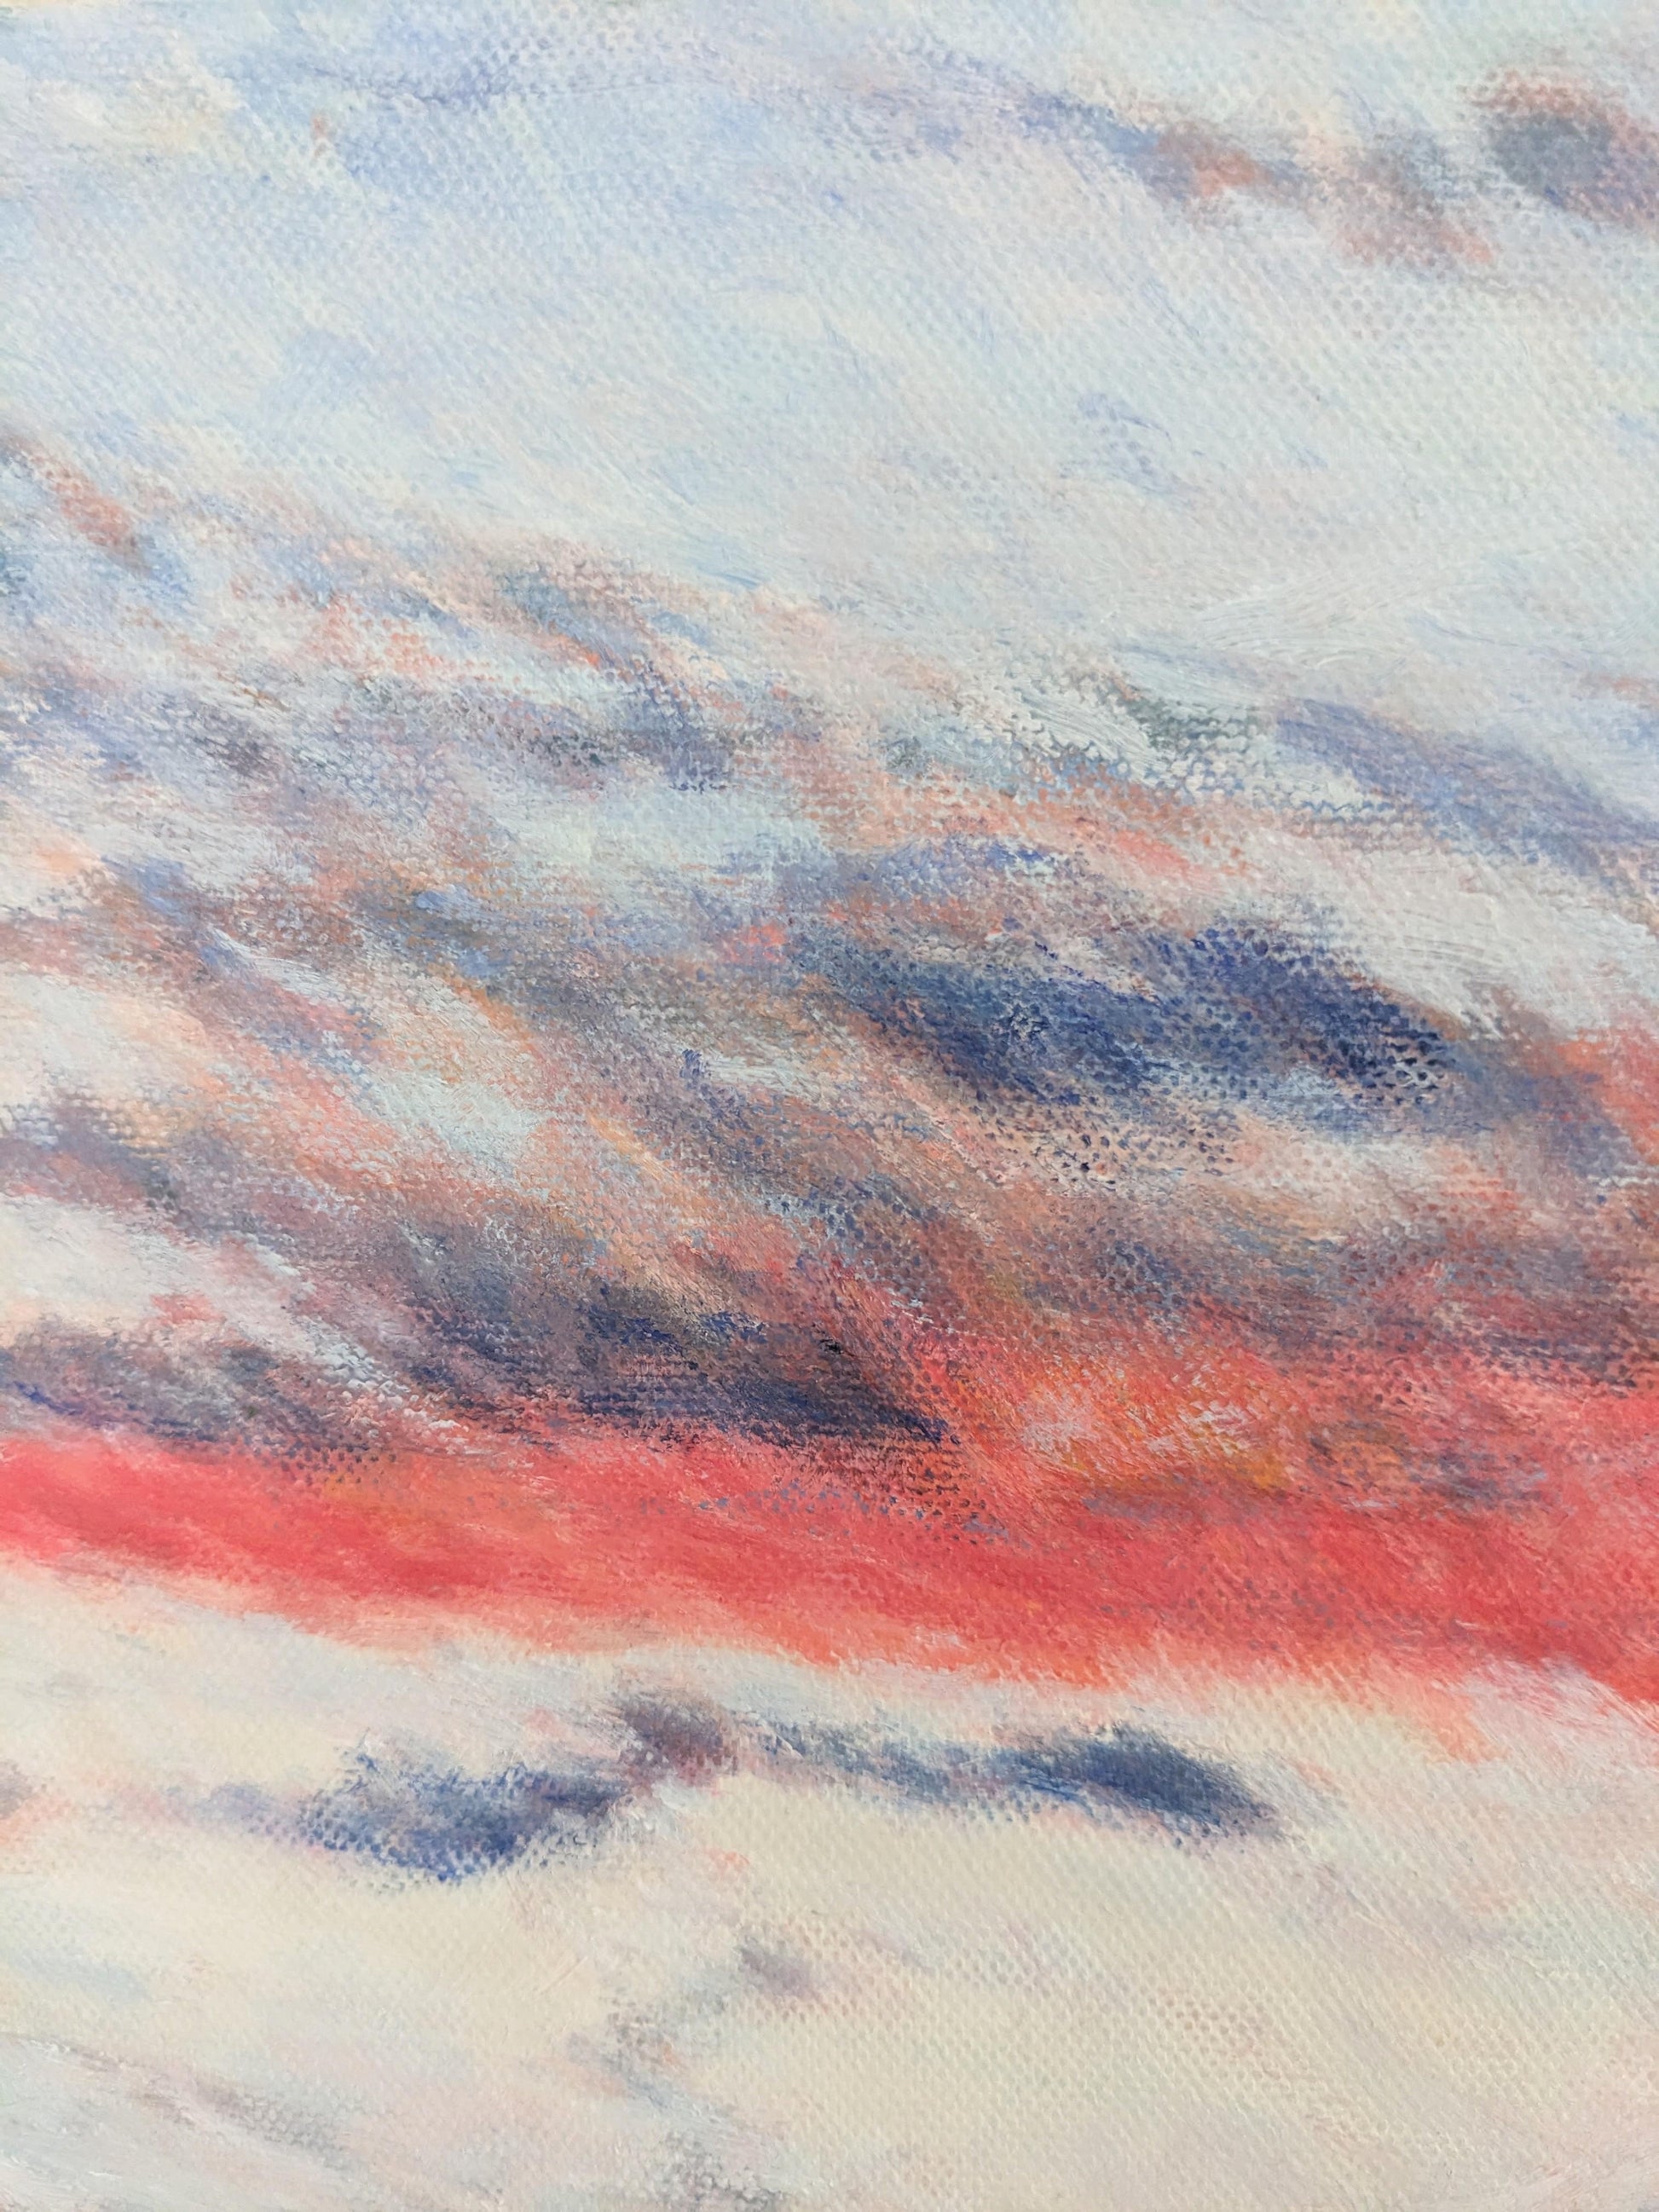 『燃えるような夕日(Burning sunset)』 - FROM ARTIST